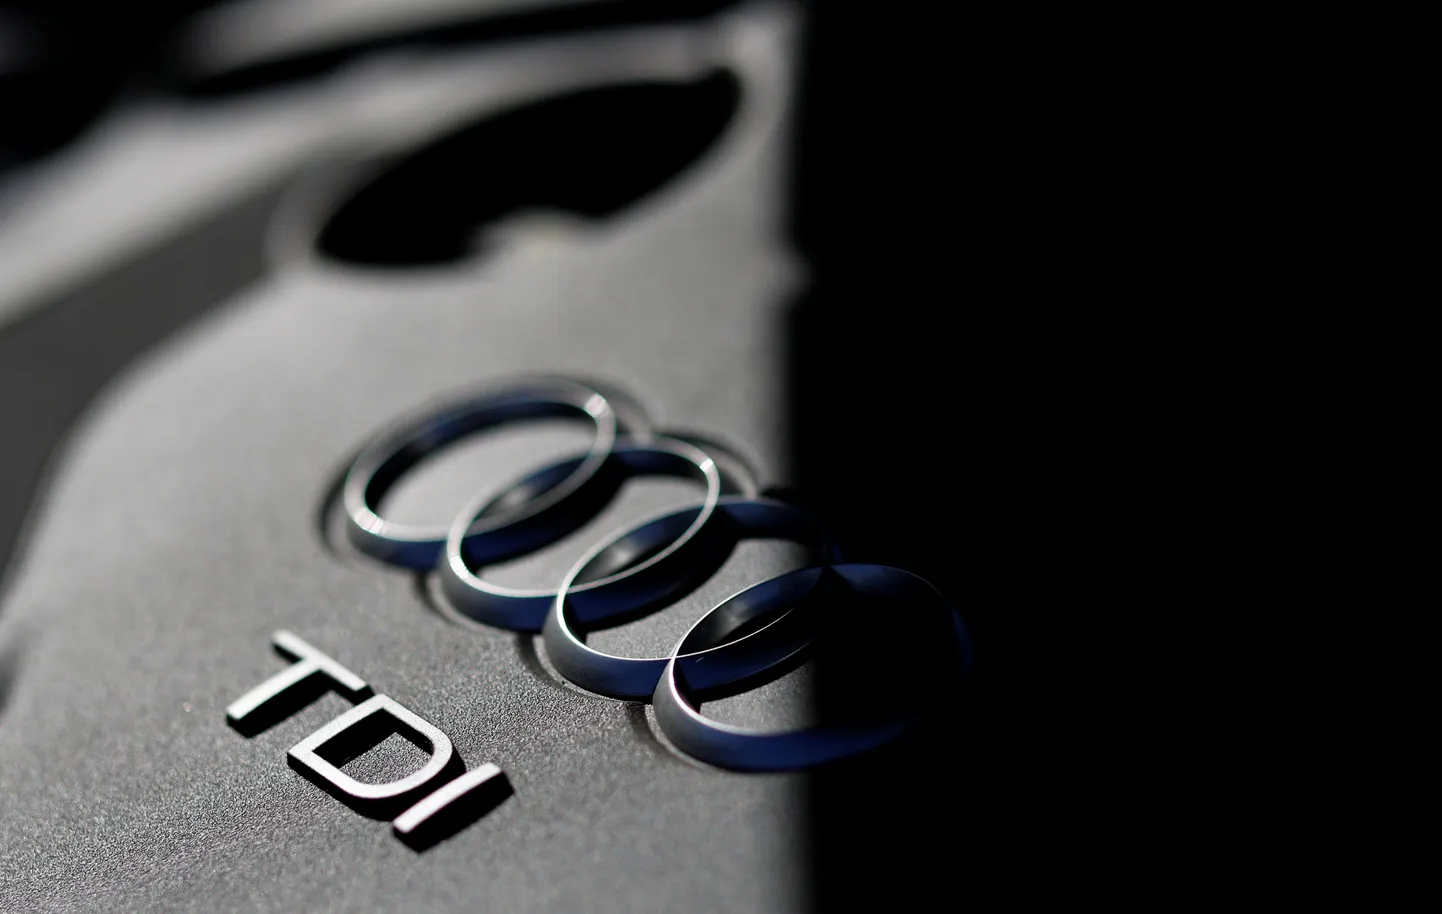 Проводимые исследования автомобилей показывают, что Audi является одной из любимых марок автомобилей среди жителей Эстонии.